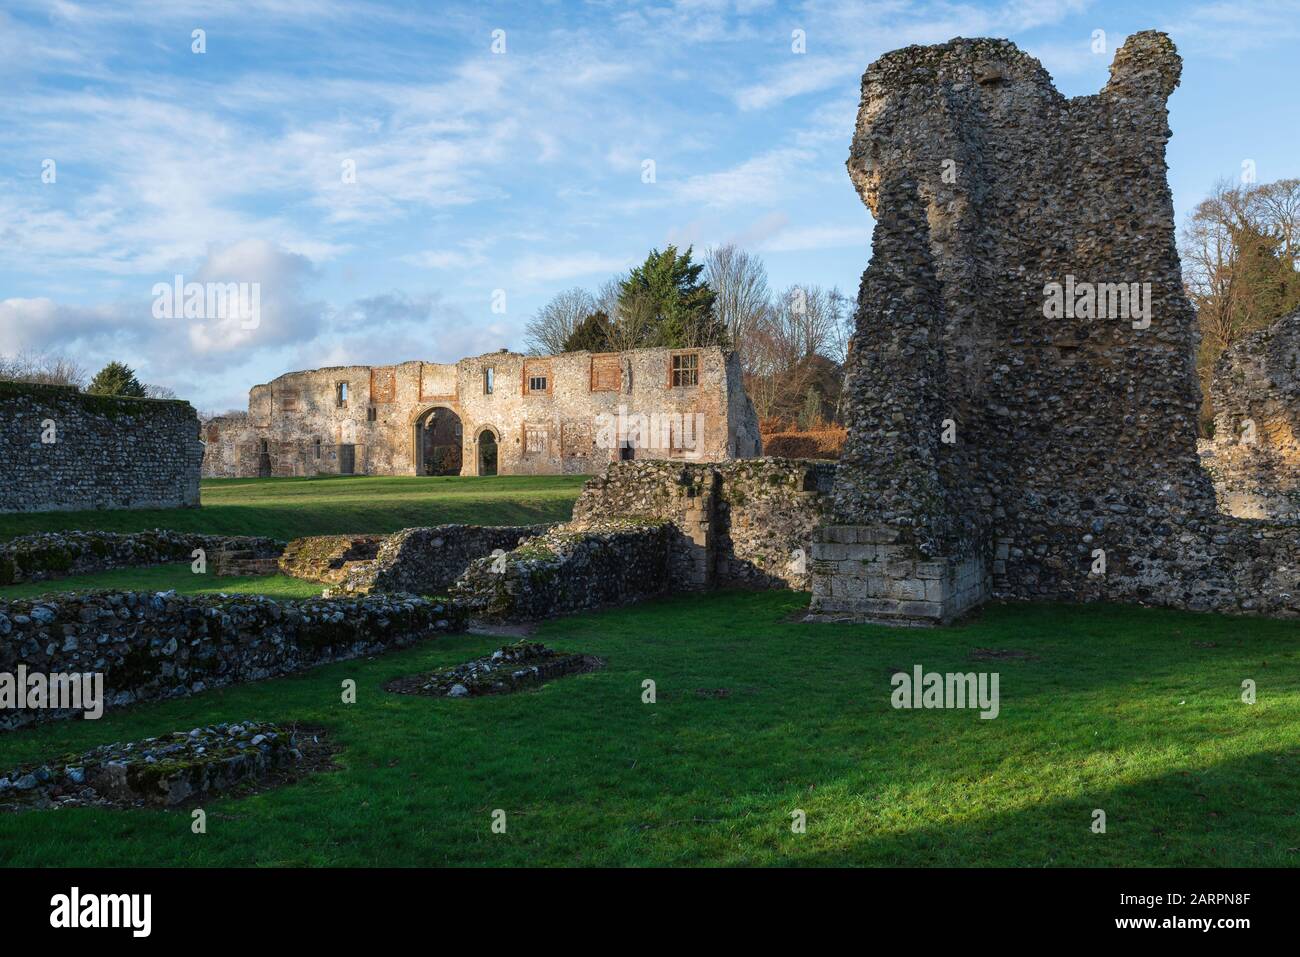 Thetford Priory, Blick auf das mittelalterliche Prior's Lodging House, das von ruiniertem Bruchmauerwerk des Cluniac-Klostergebäudes, Thetford, Norfolk, Großbritannien, flankiert wird Stockfoto